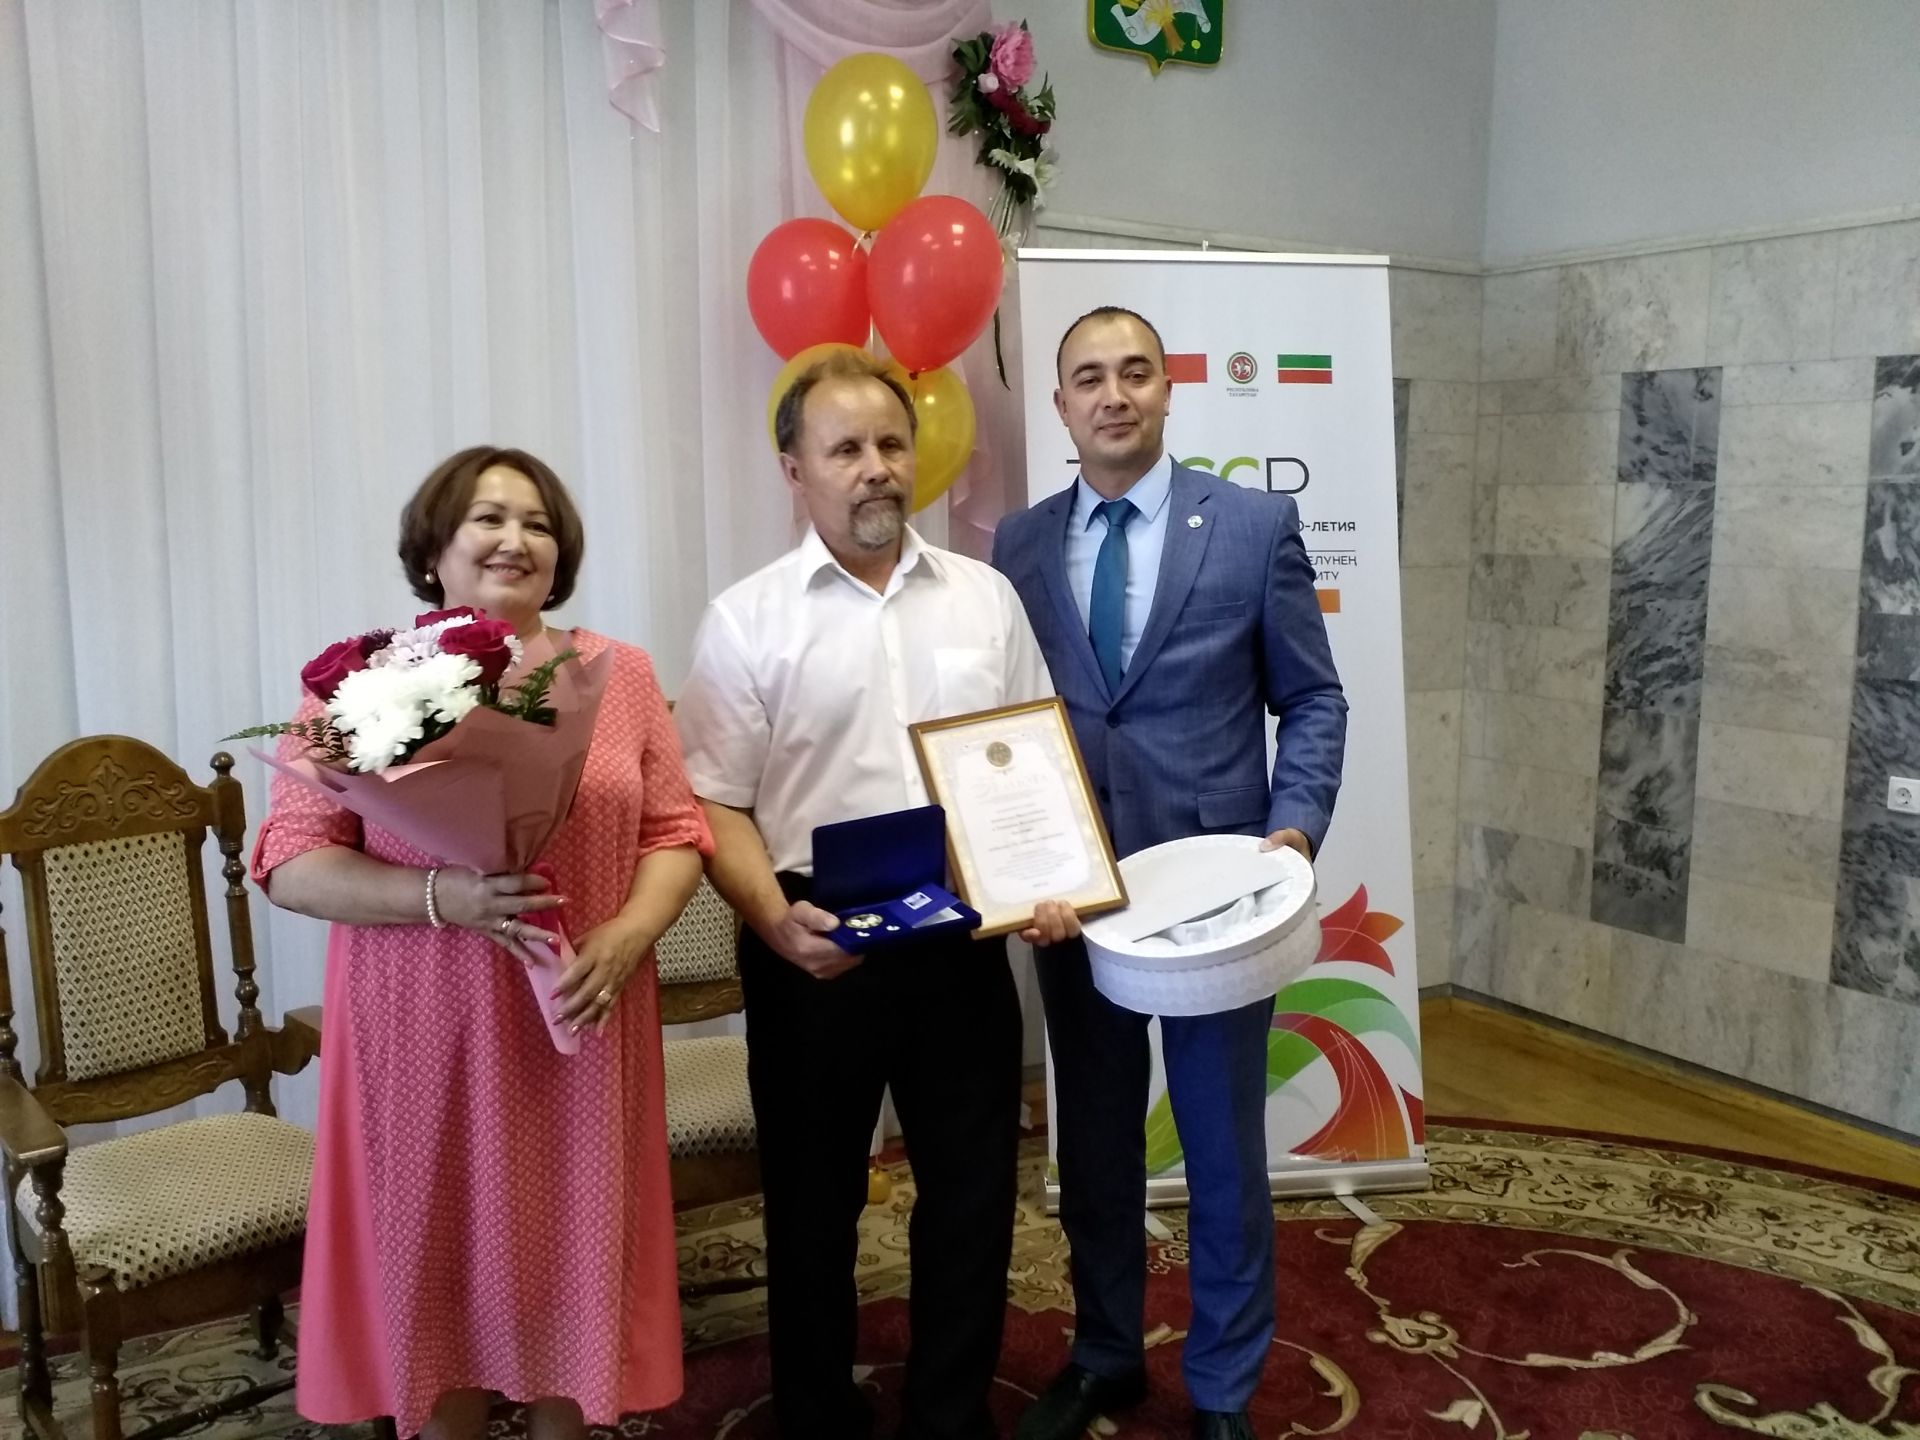 Сегодня семье Князевых из Буинска вручили медаль (фоторепортаж)